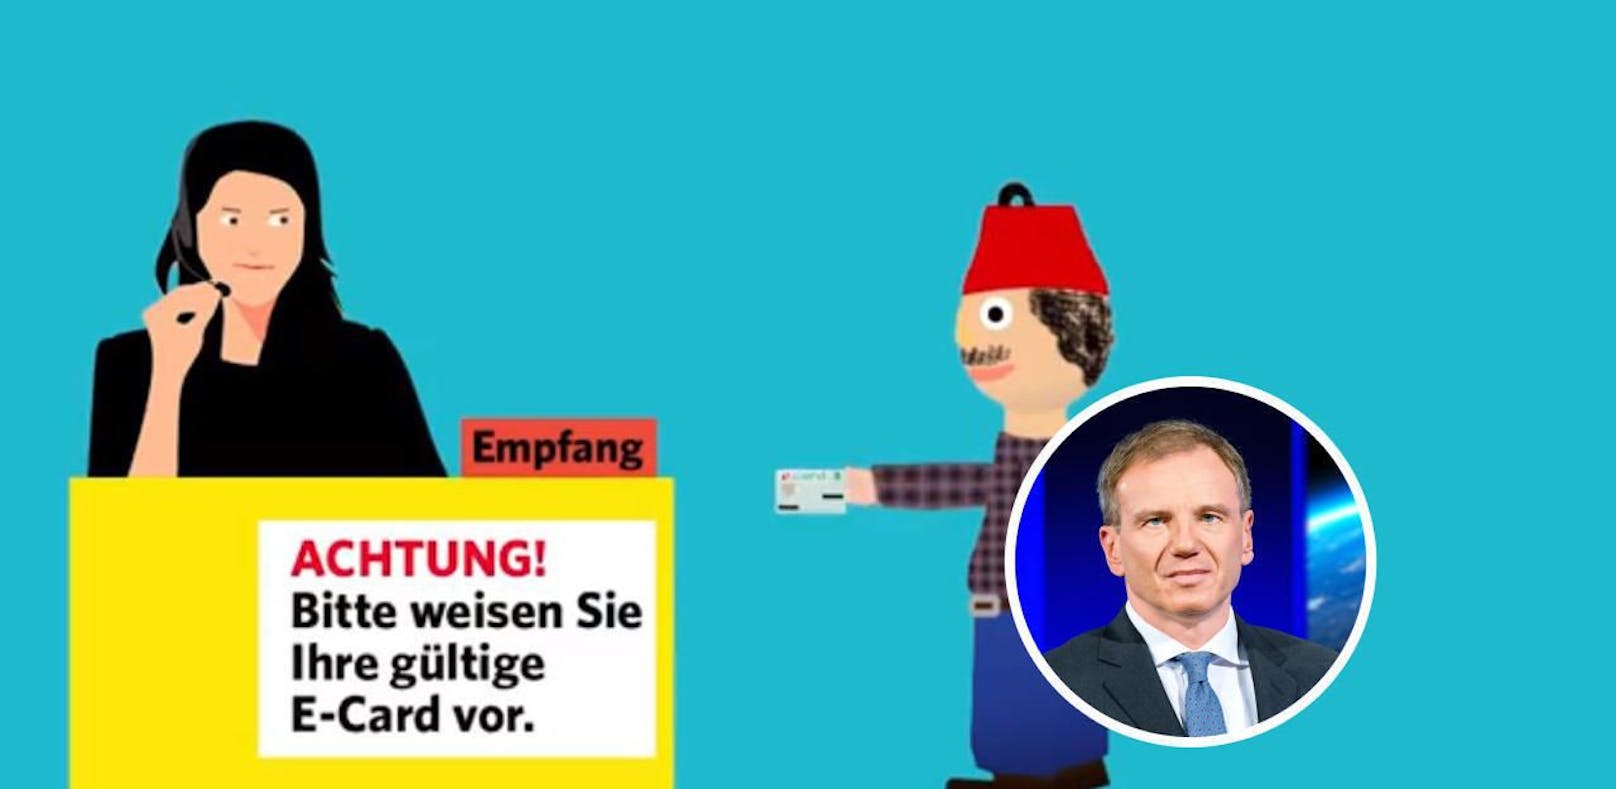 In einem Clip der FPÖ wird erklärt, weshalb es künftig Fotos auf der E-Card geben wird. Armin Wolf kritisiert die Darstellung.